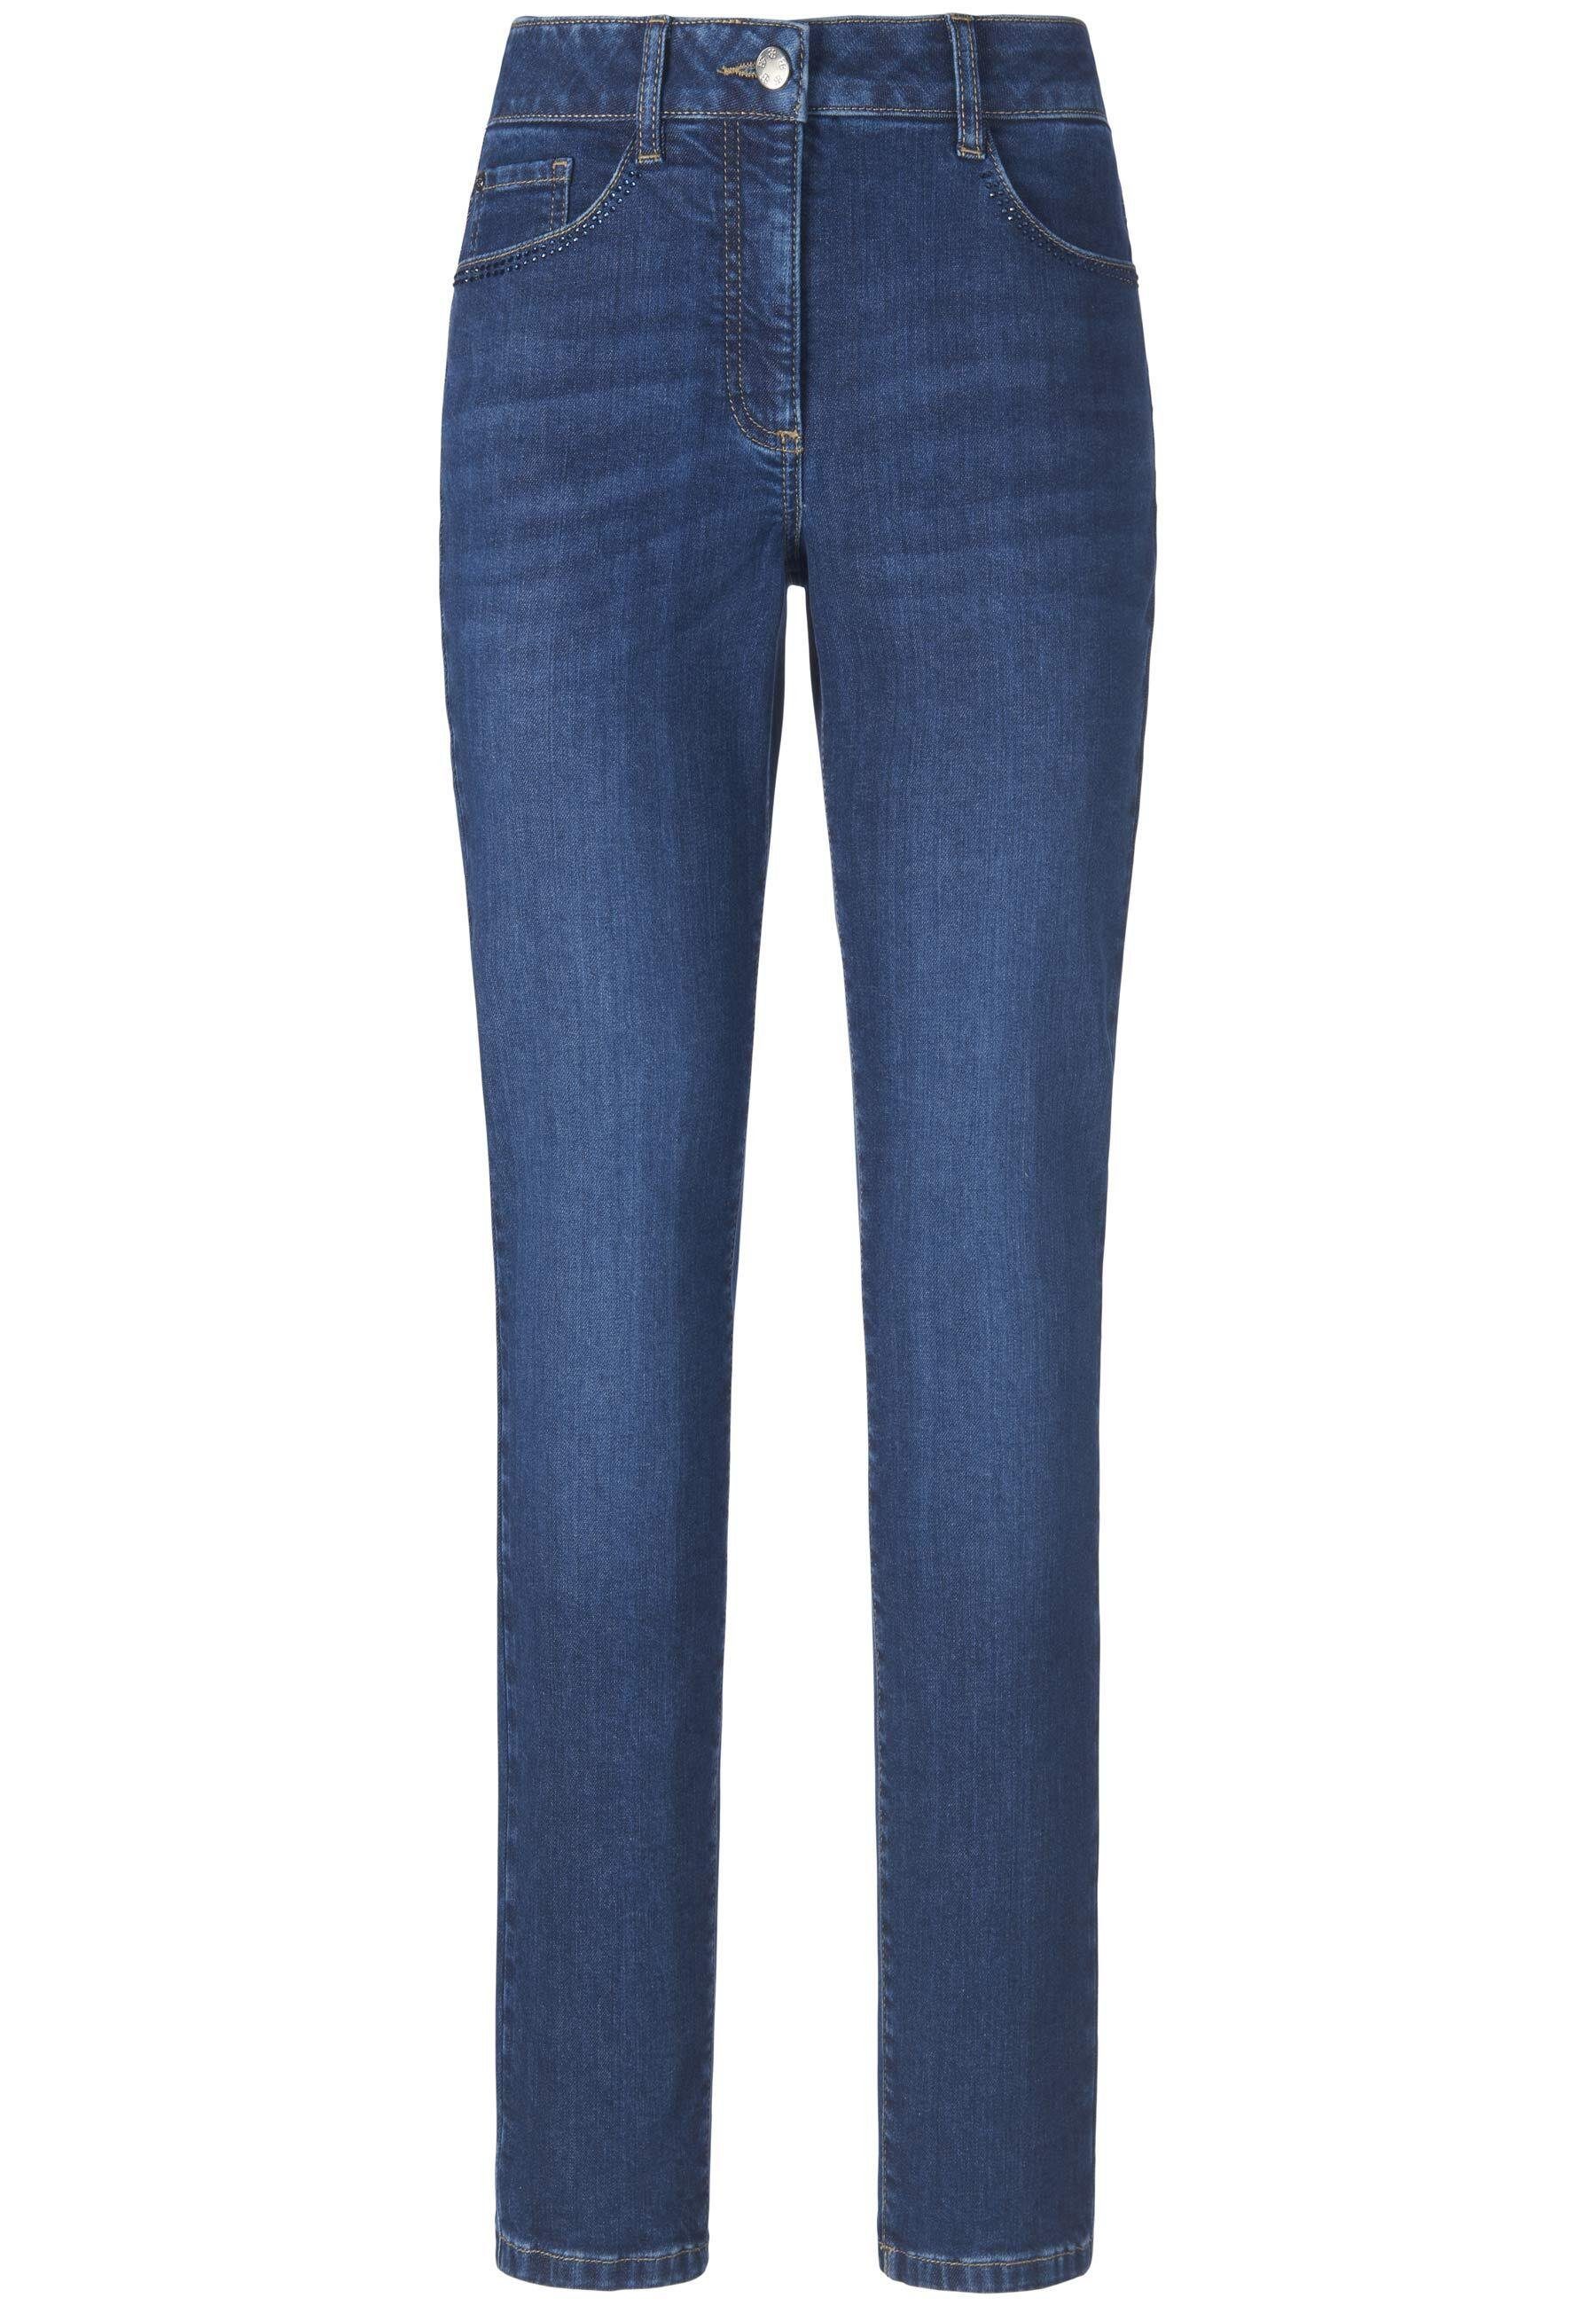 Basler DARK Julienne BLUE 5-Pocket-Jeans DENIM